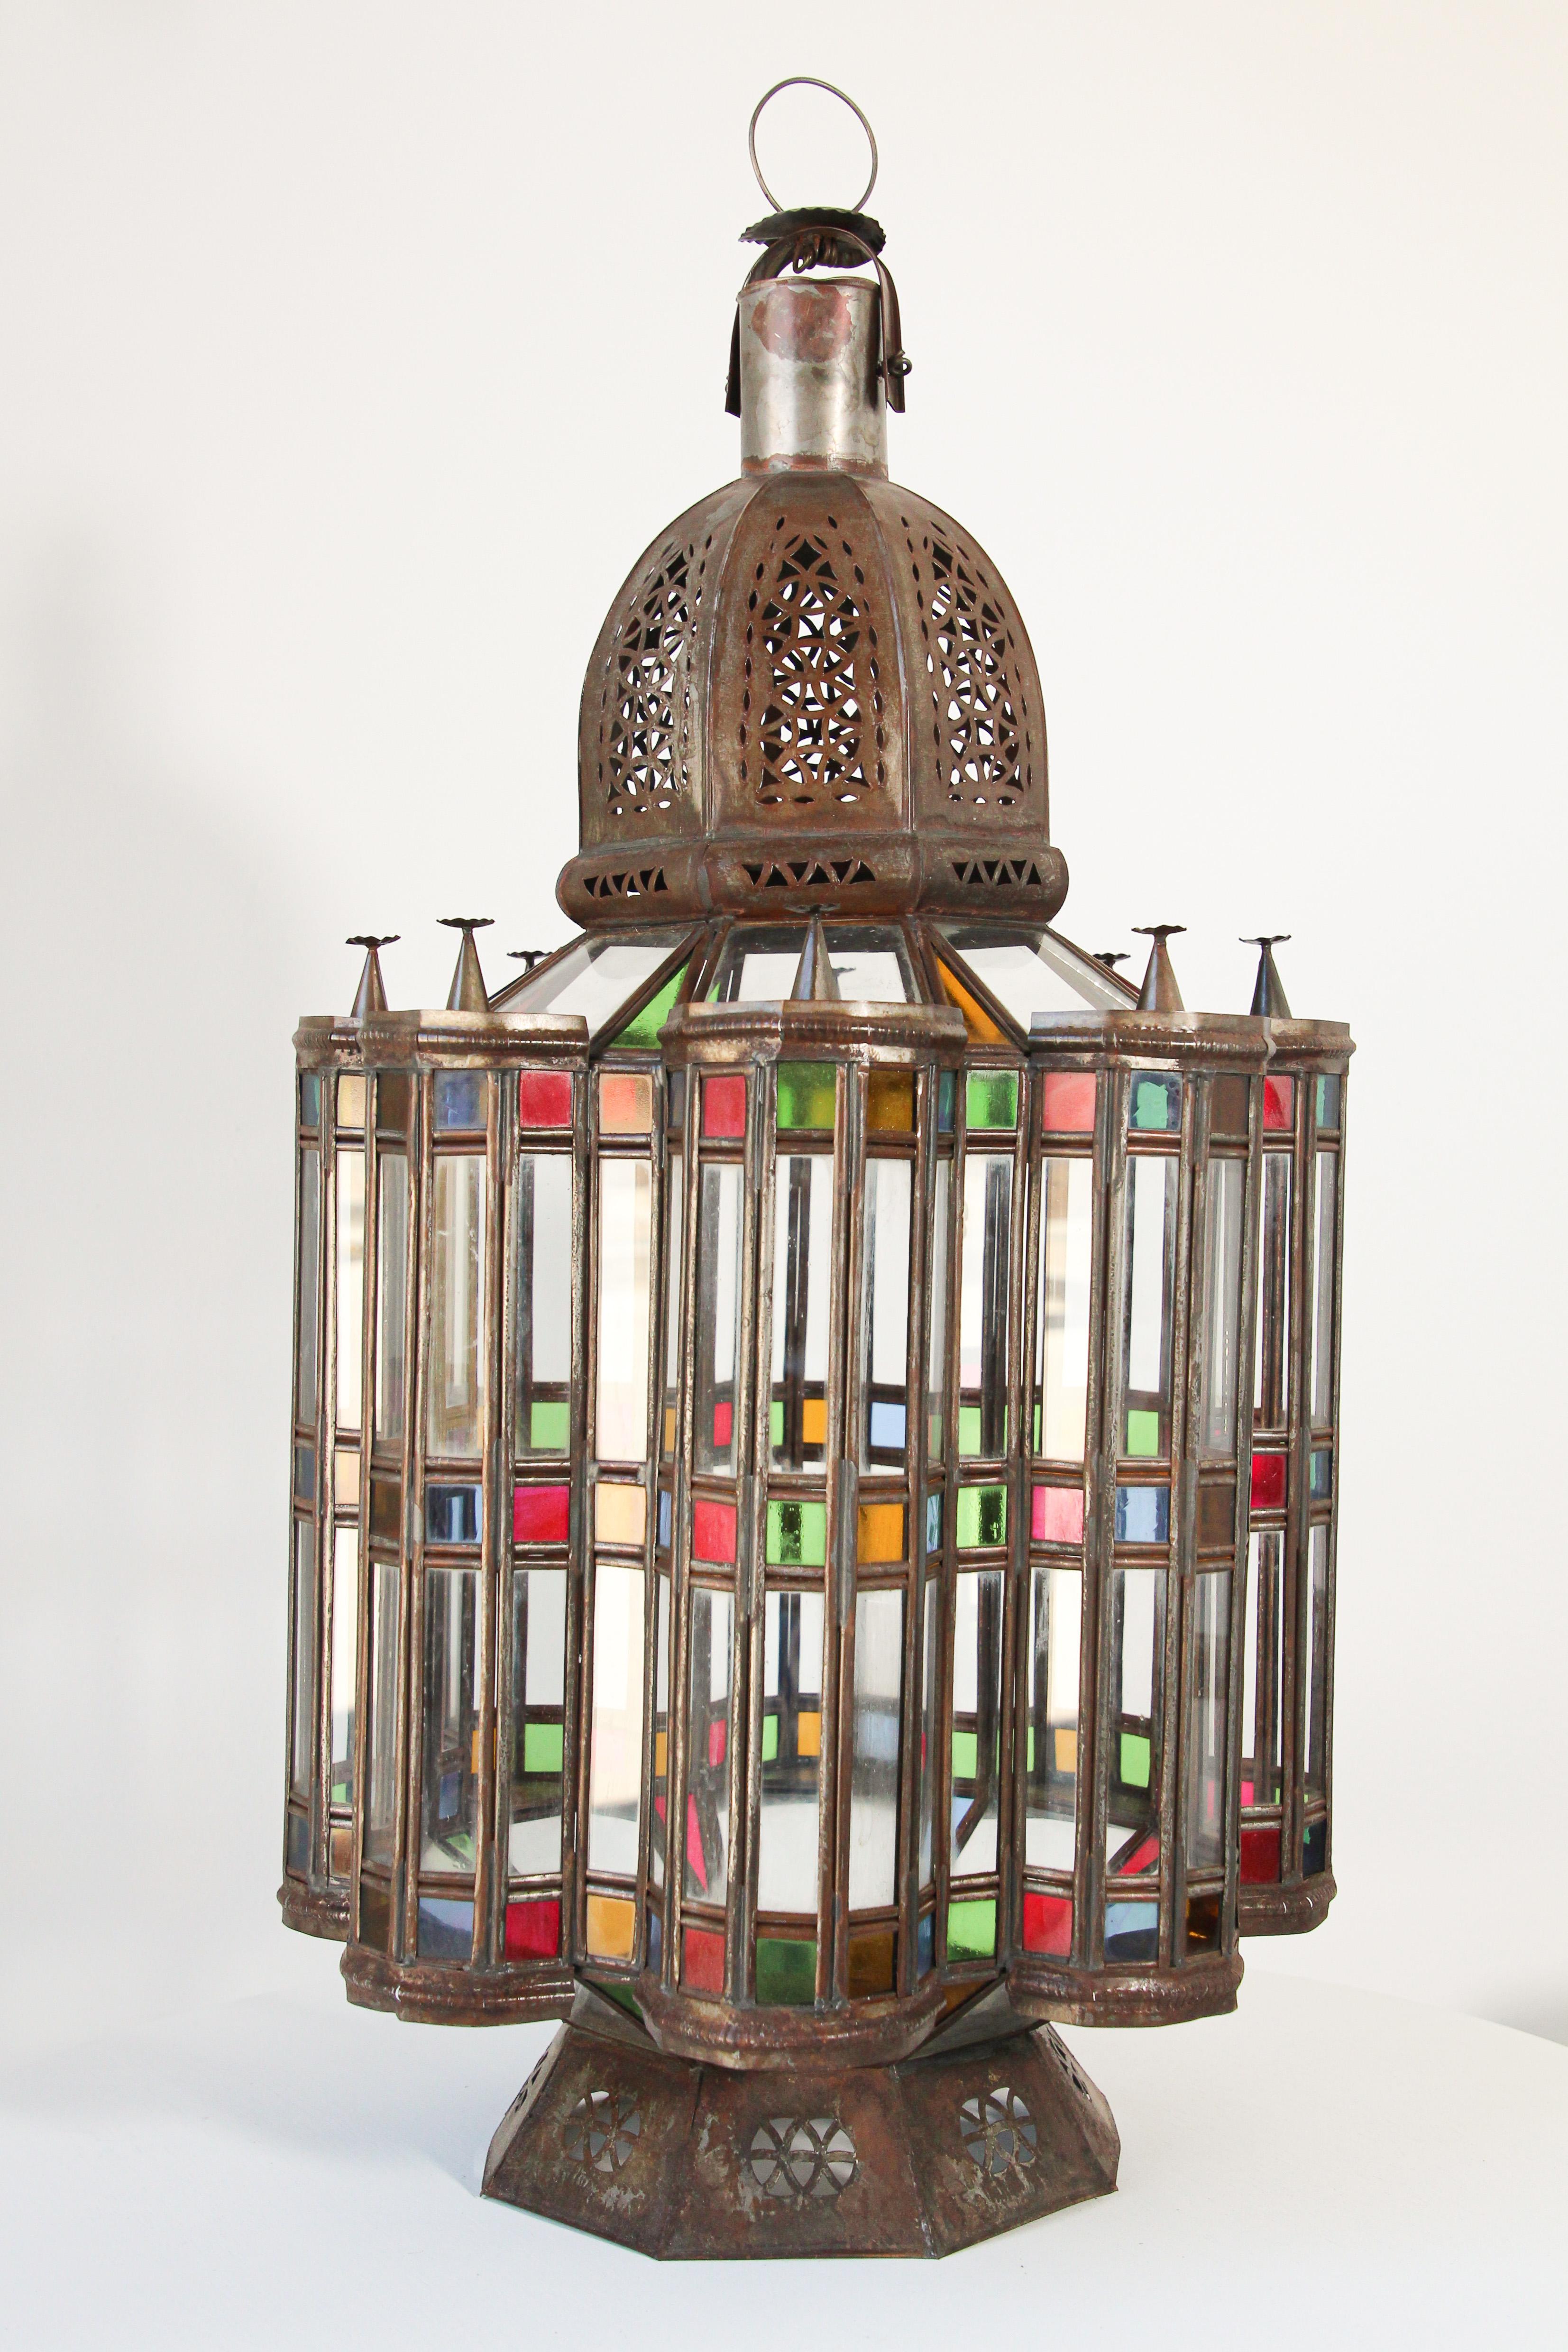 Grande lanterne marocaine en verre Mamounia au design mauresque.
Elegant Impressionnante lanterne marocaine en métal et verre percé.
Grand modèle de 29 pouces de haut avec du verre soufflé transparent, bleu, vert, rouge et doré sur tout le